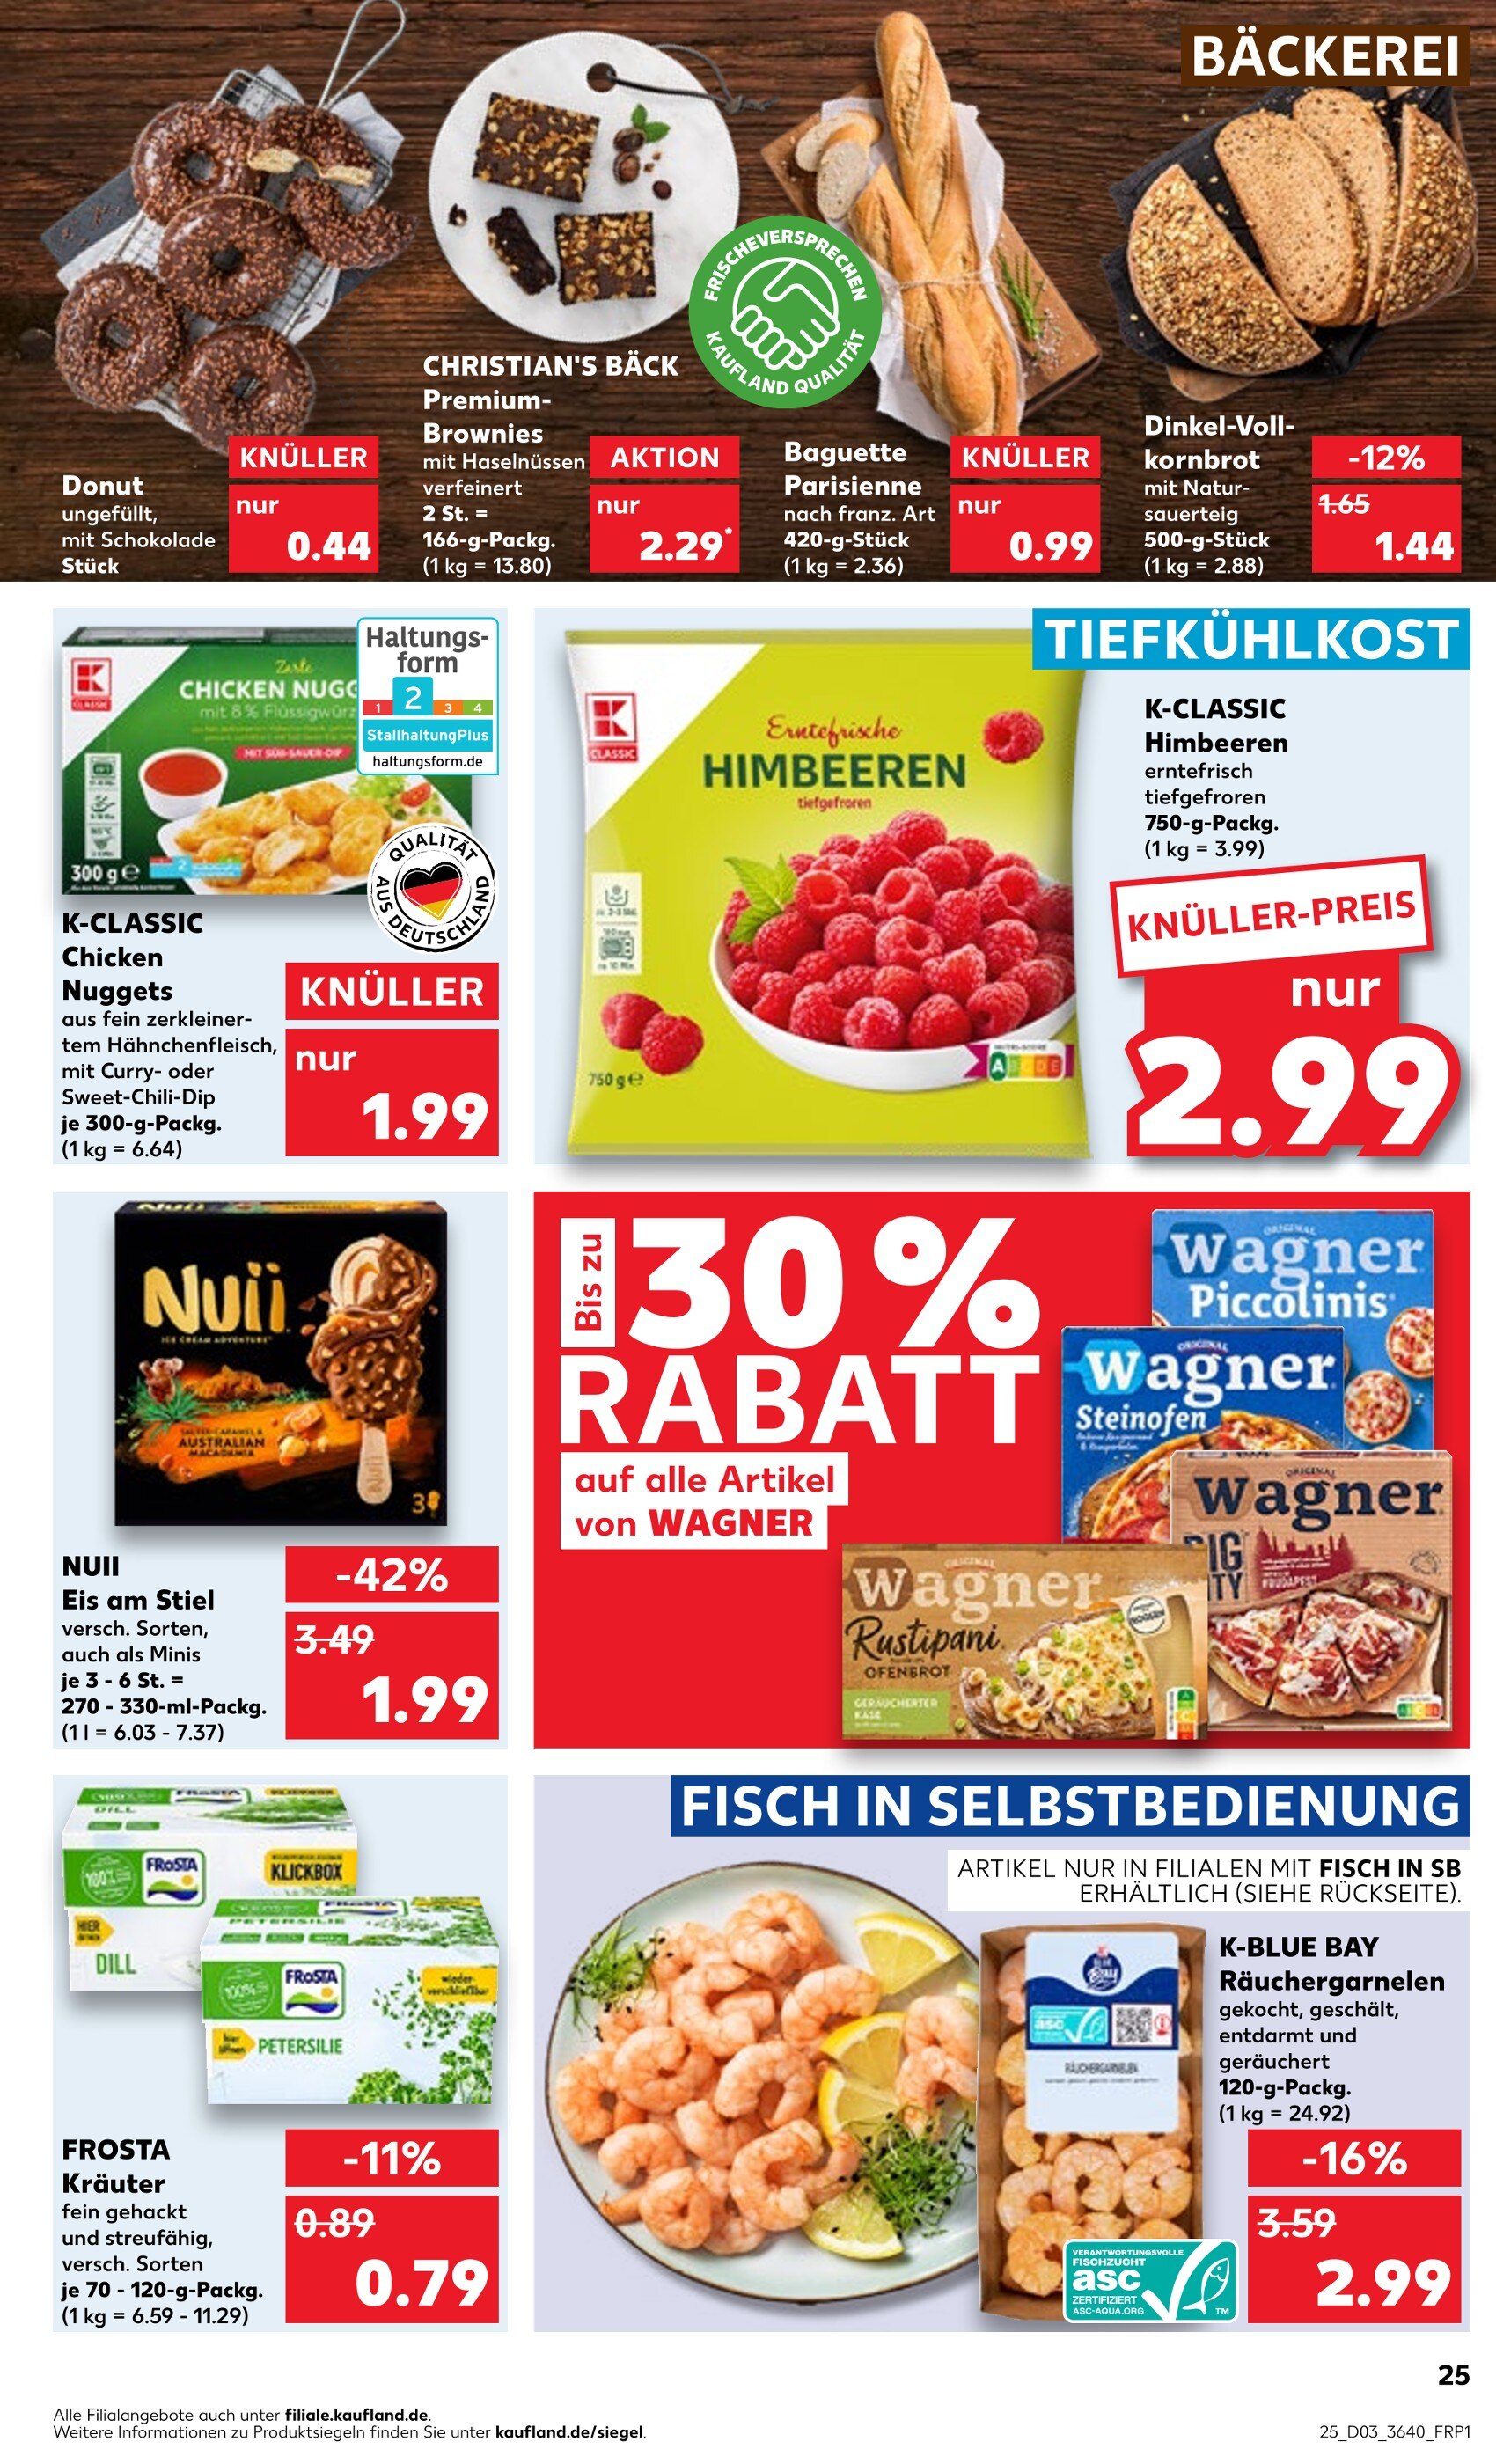 Angebote in kaufen günstige Zwickau Garnelen in - Zwickau